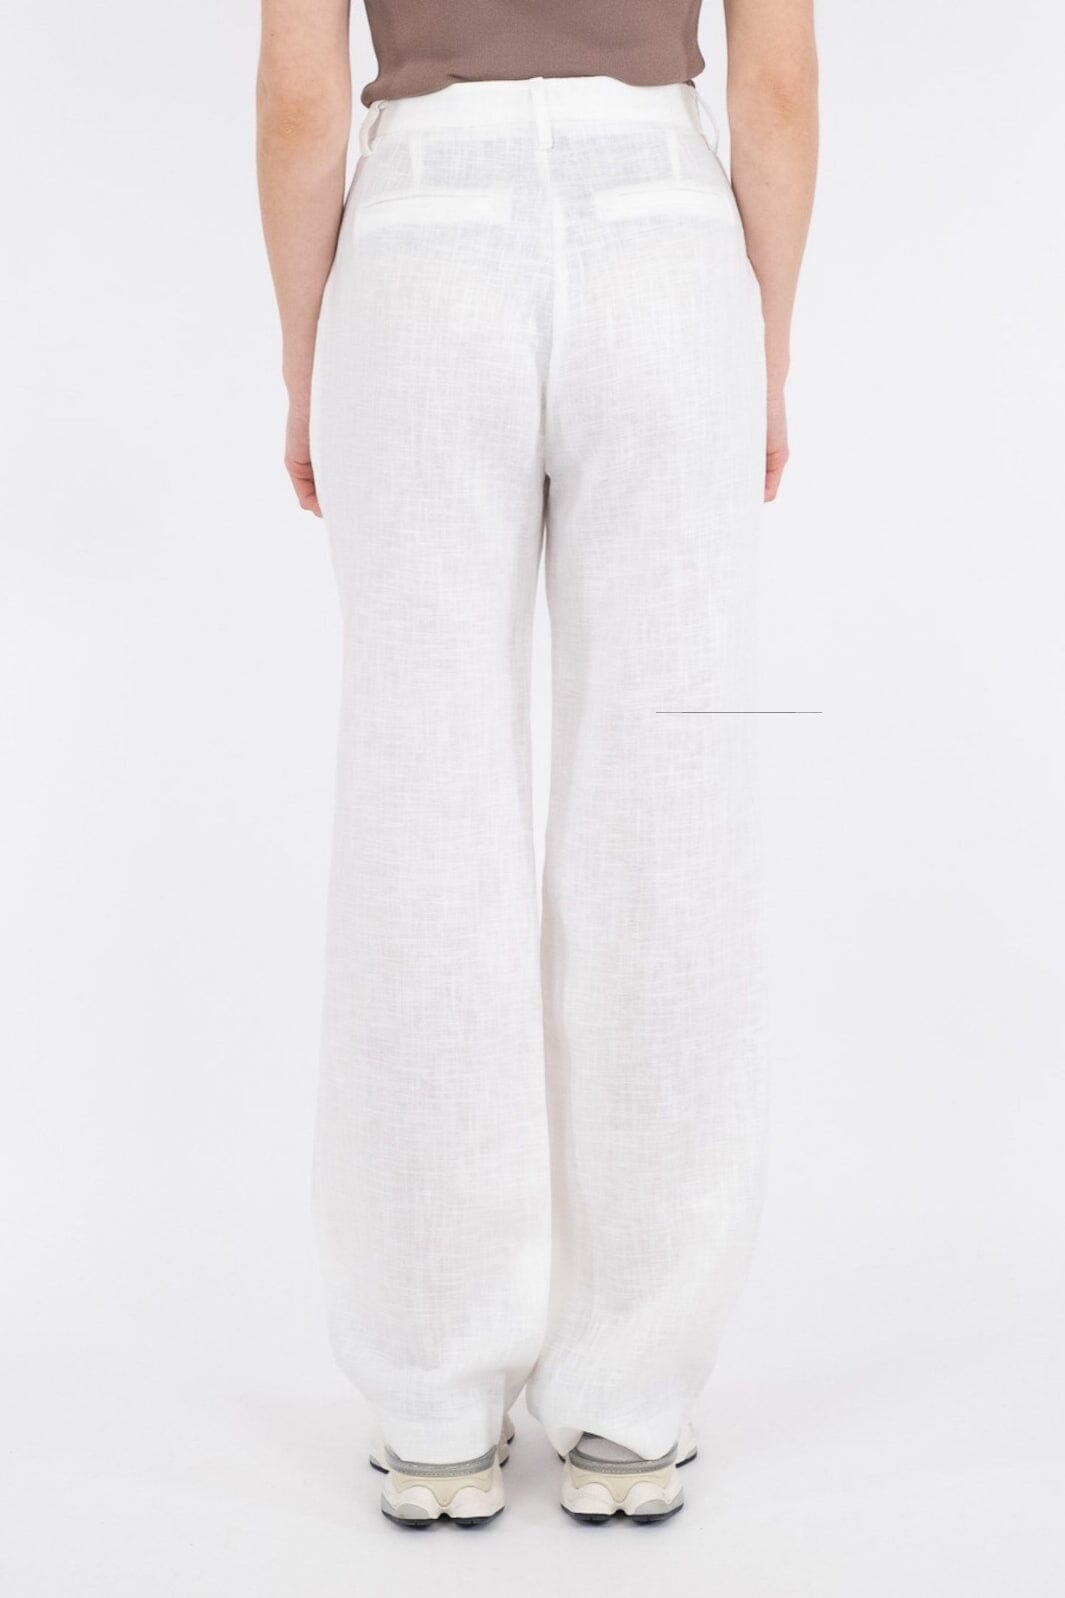 Neo Noir - Alice Heavy Linen Pants - White Bukser 